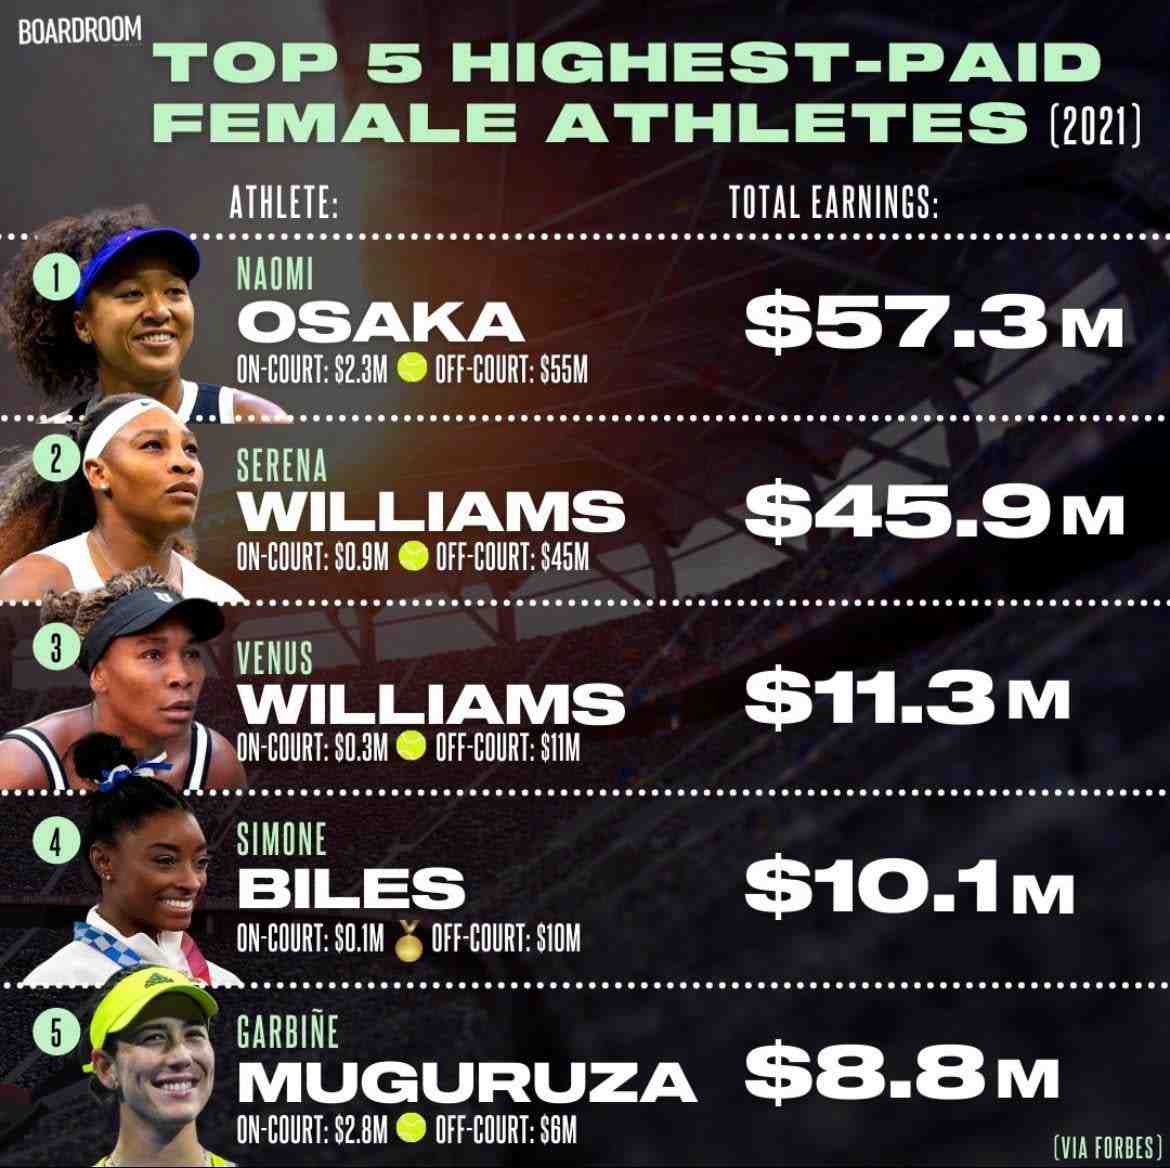 Quel est le sport qui rapporte le plus d'argent ?